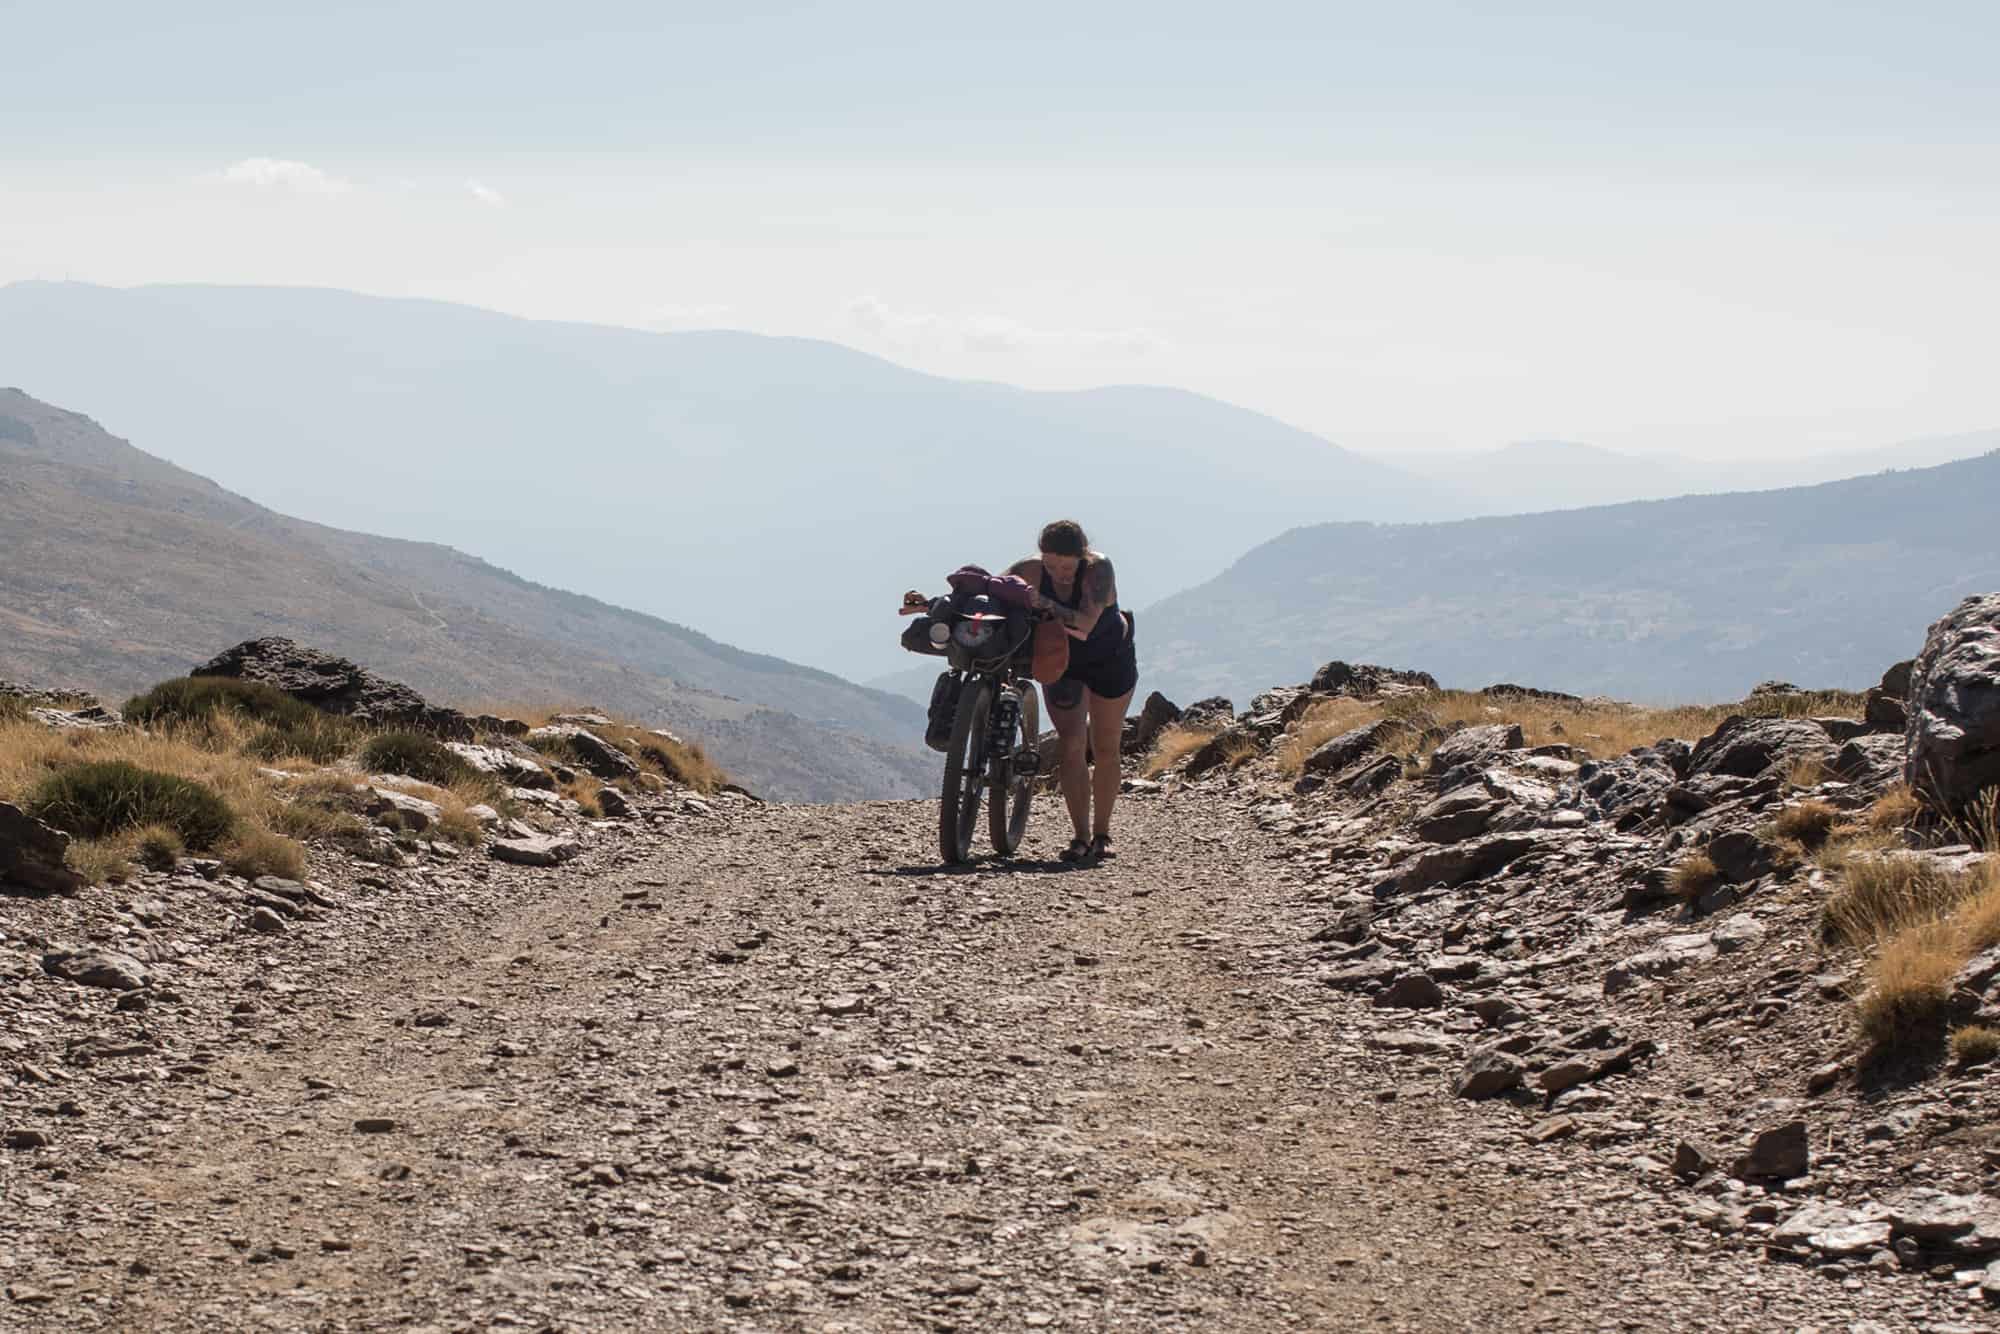 Bikepacking the Sierra Nevada